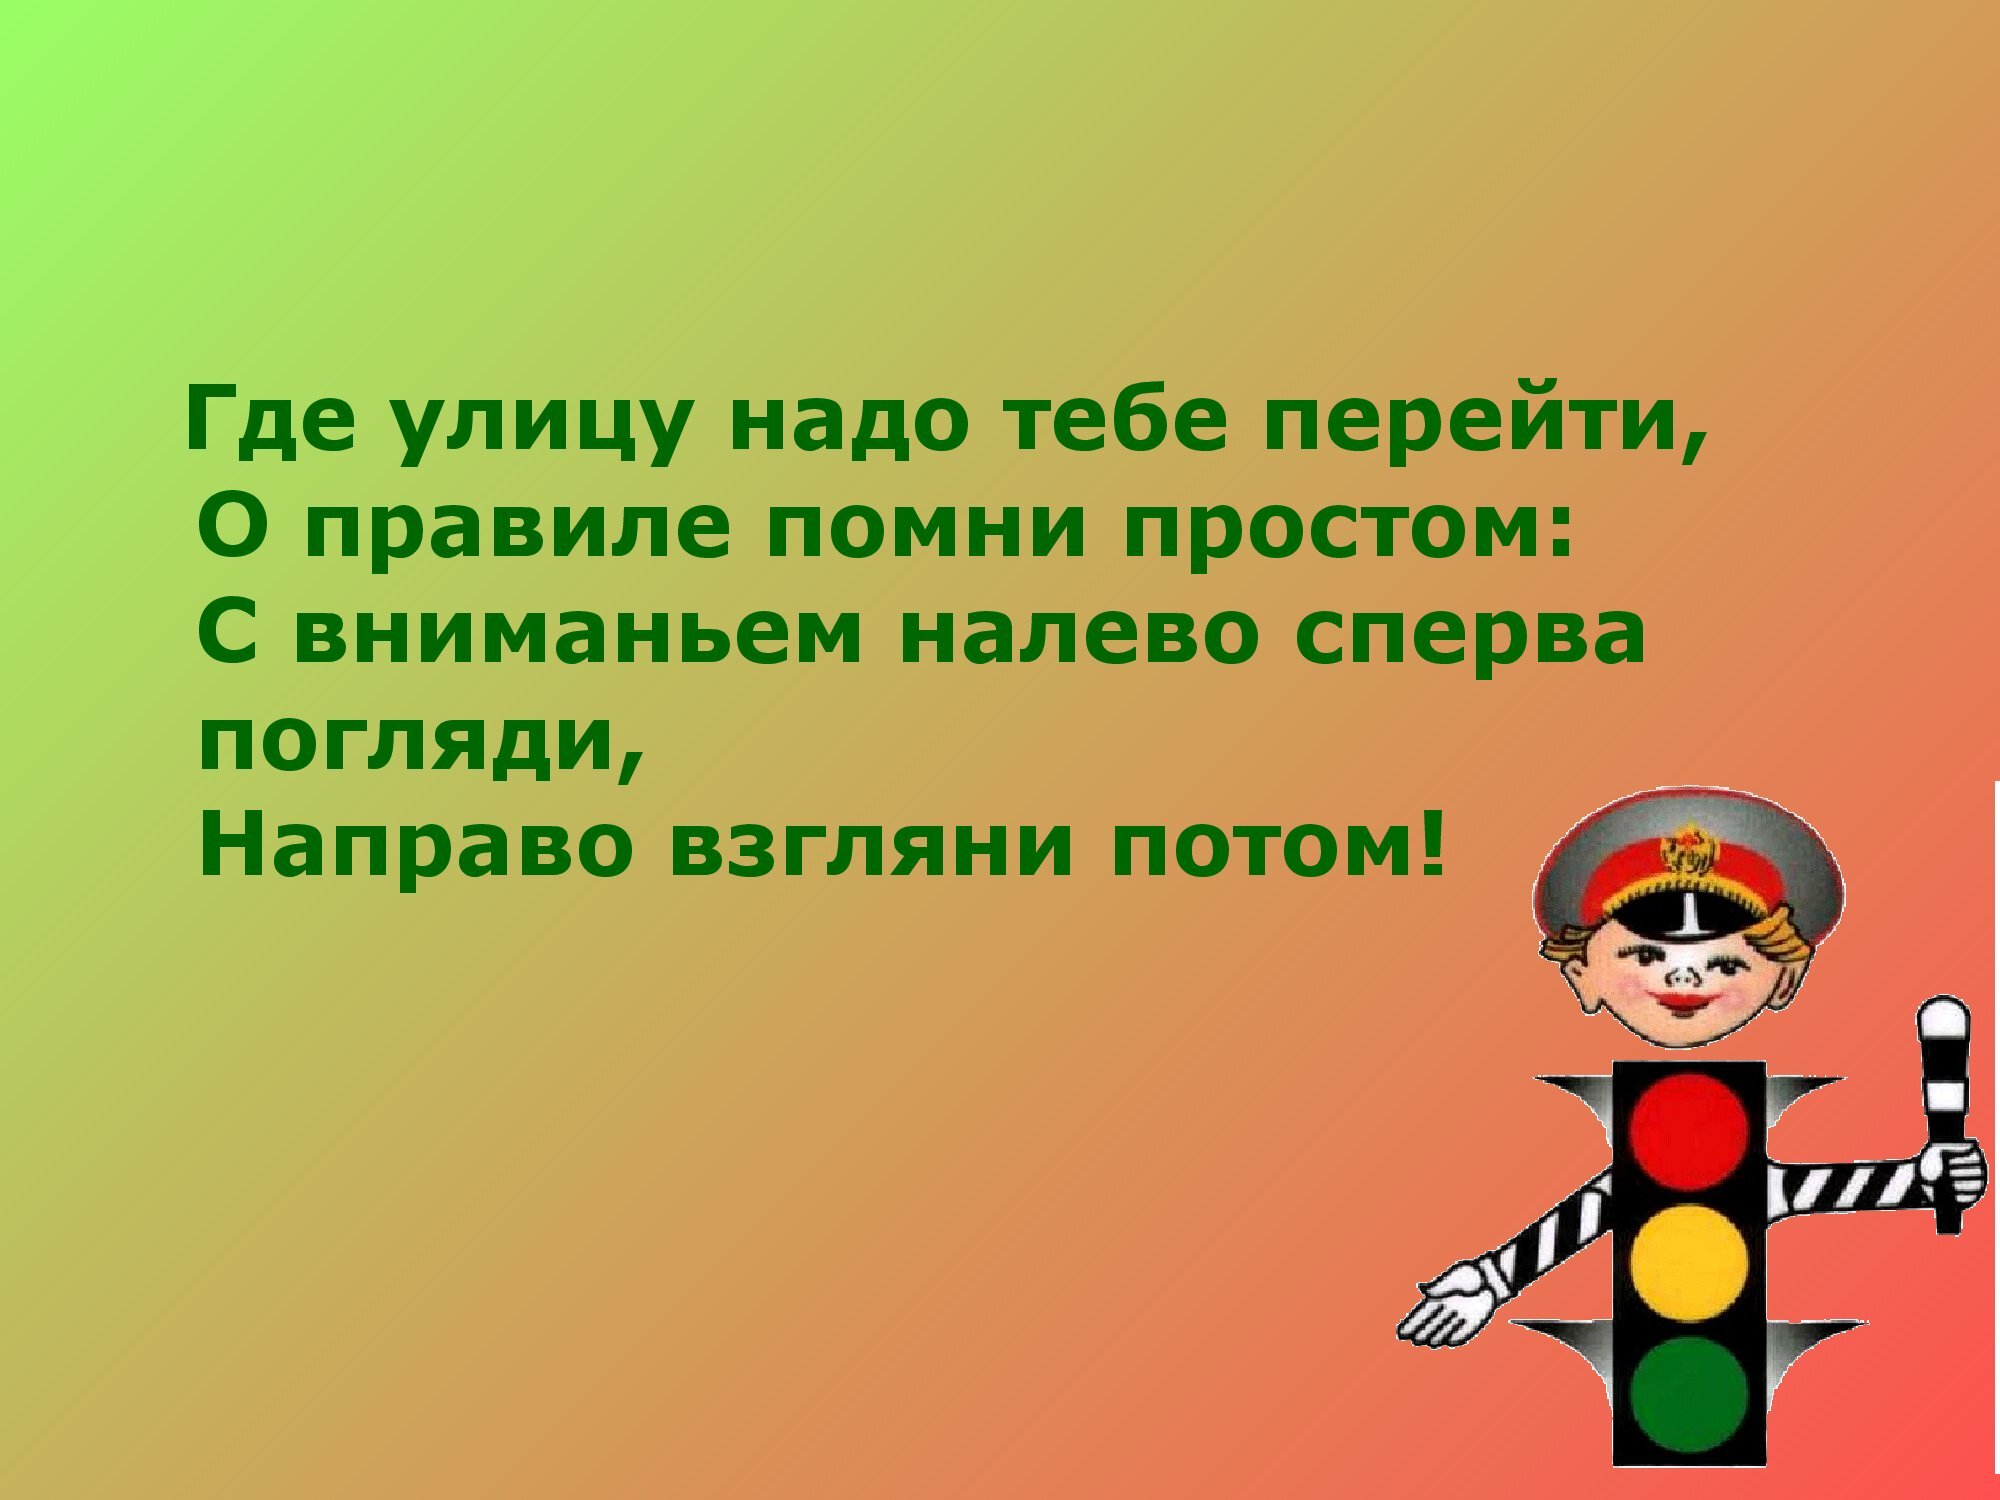 pravila_dorozhnogo_dvizheniya_15-03-2020_0000005